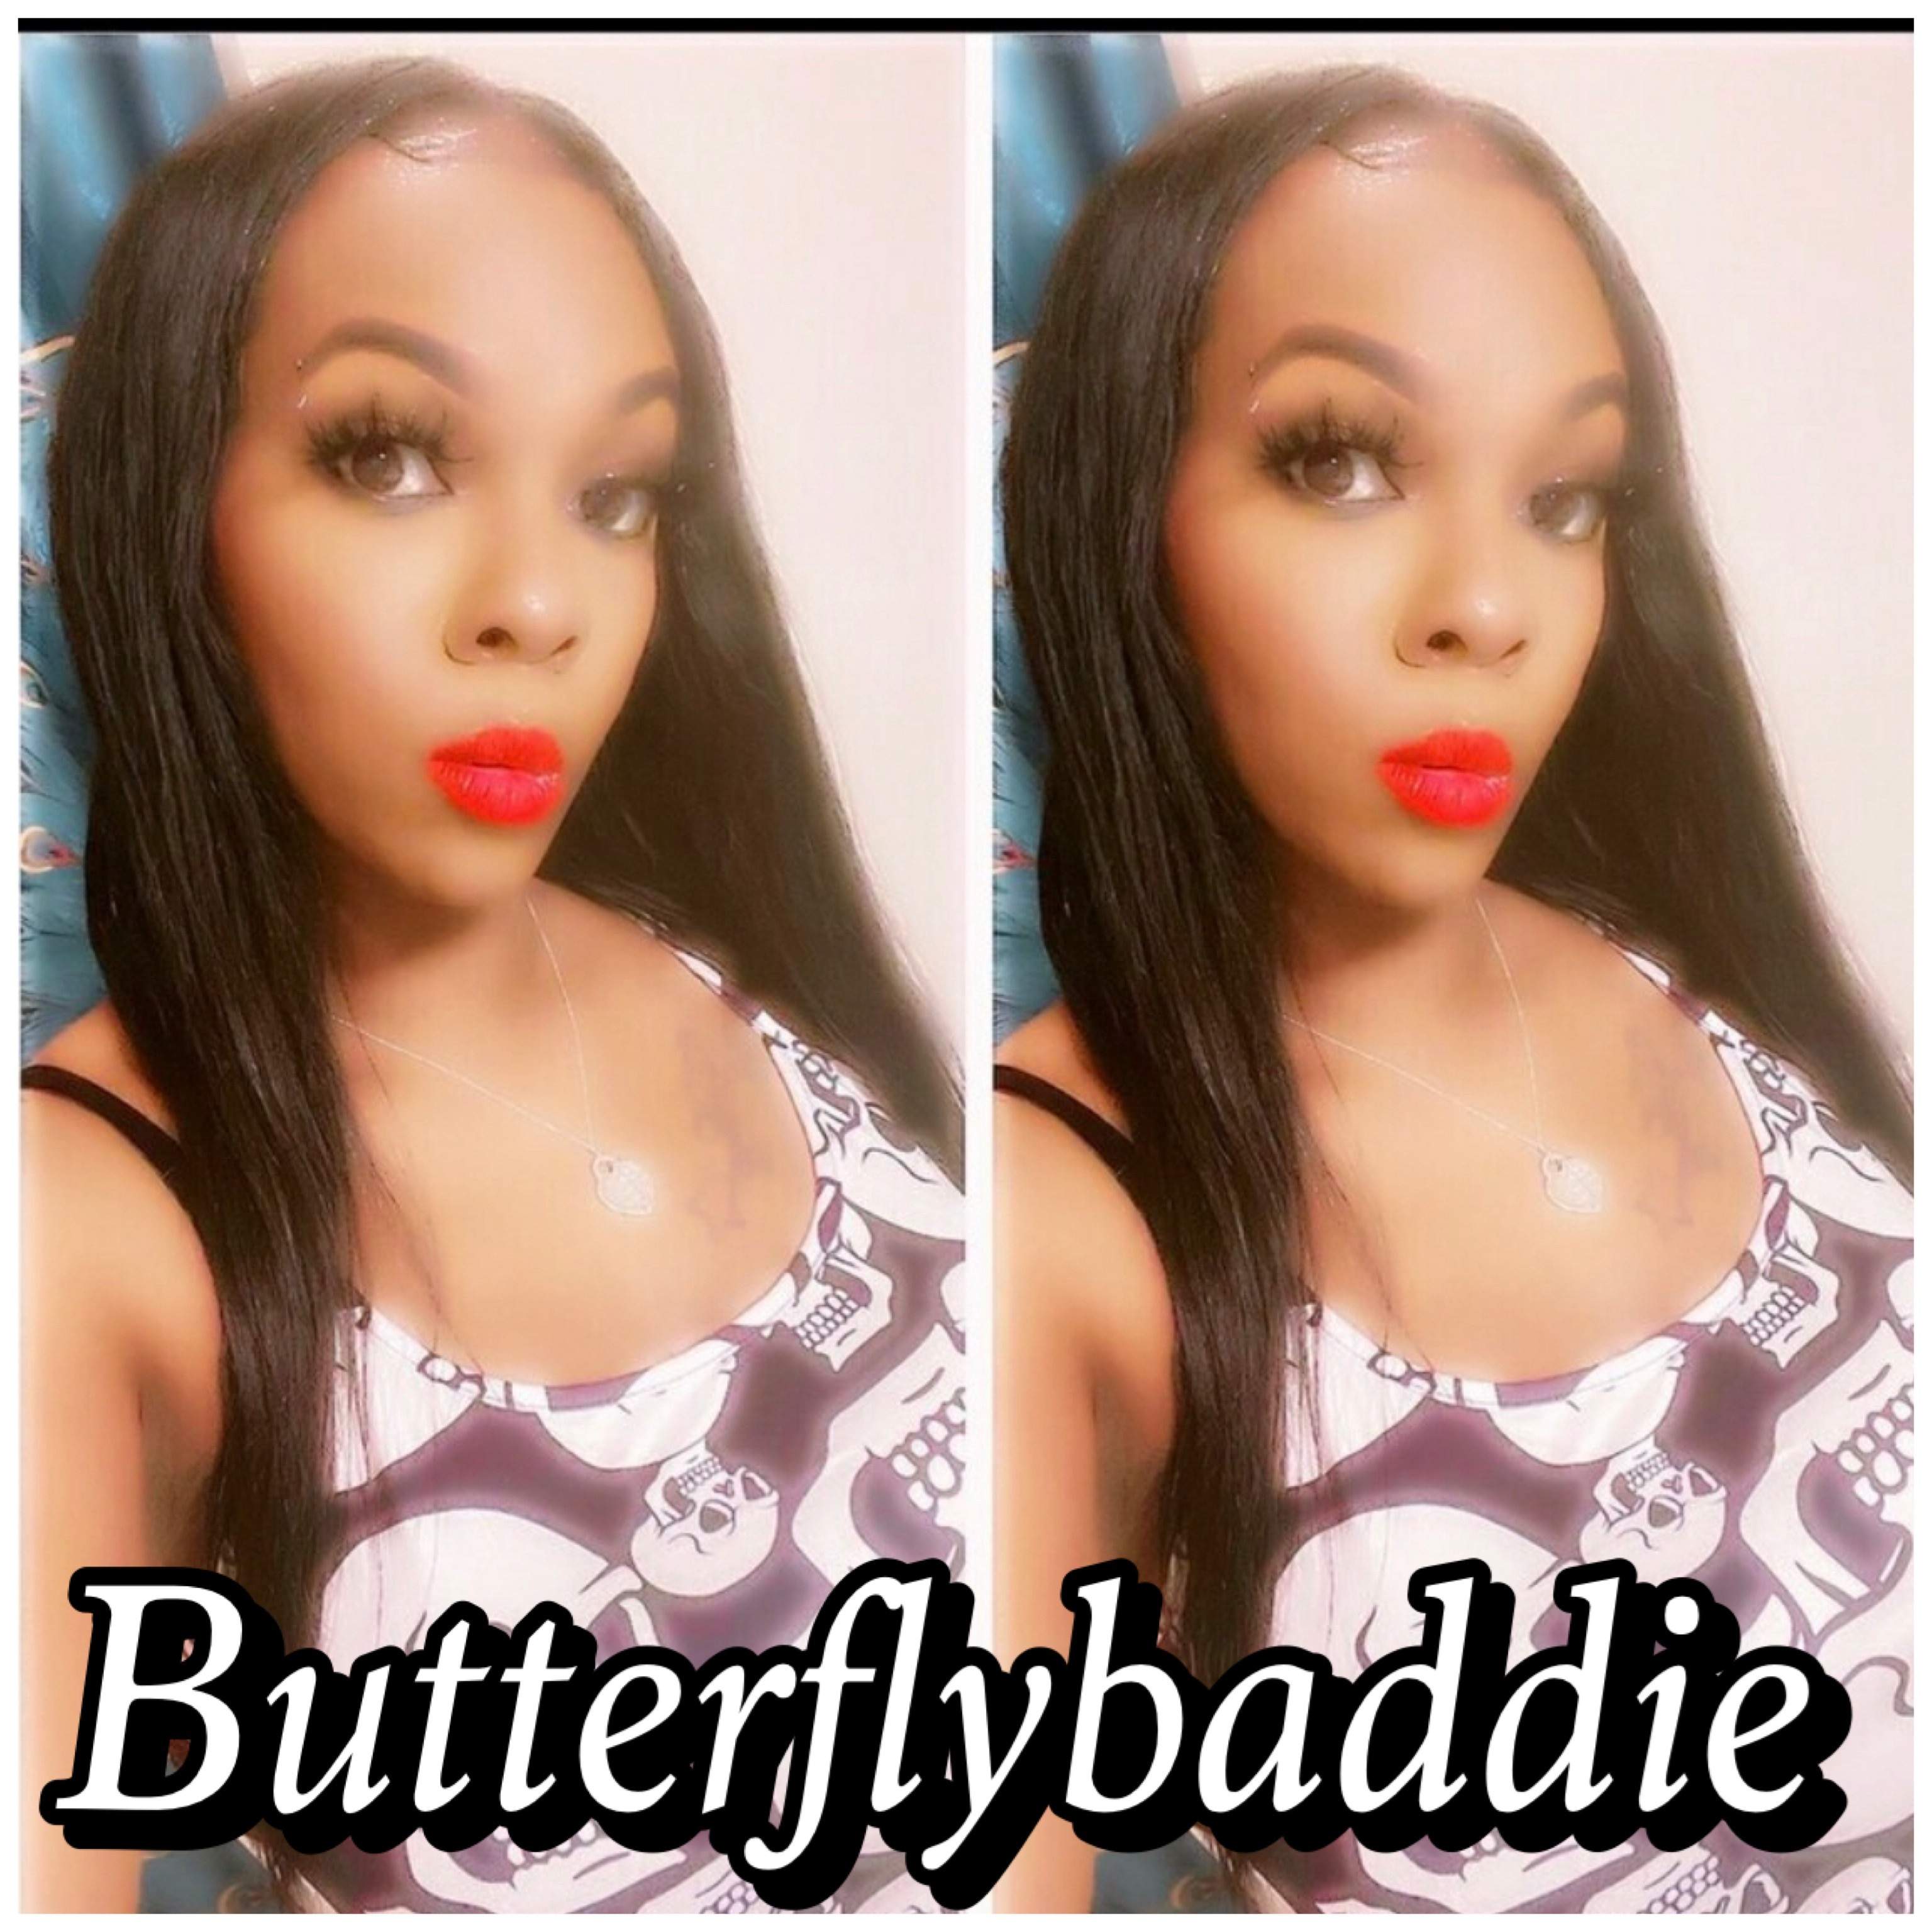 butterflybaddie35